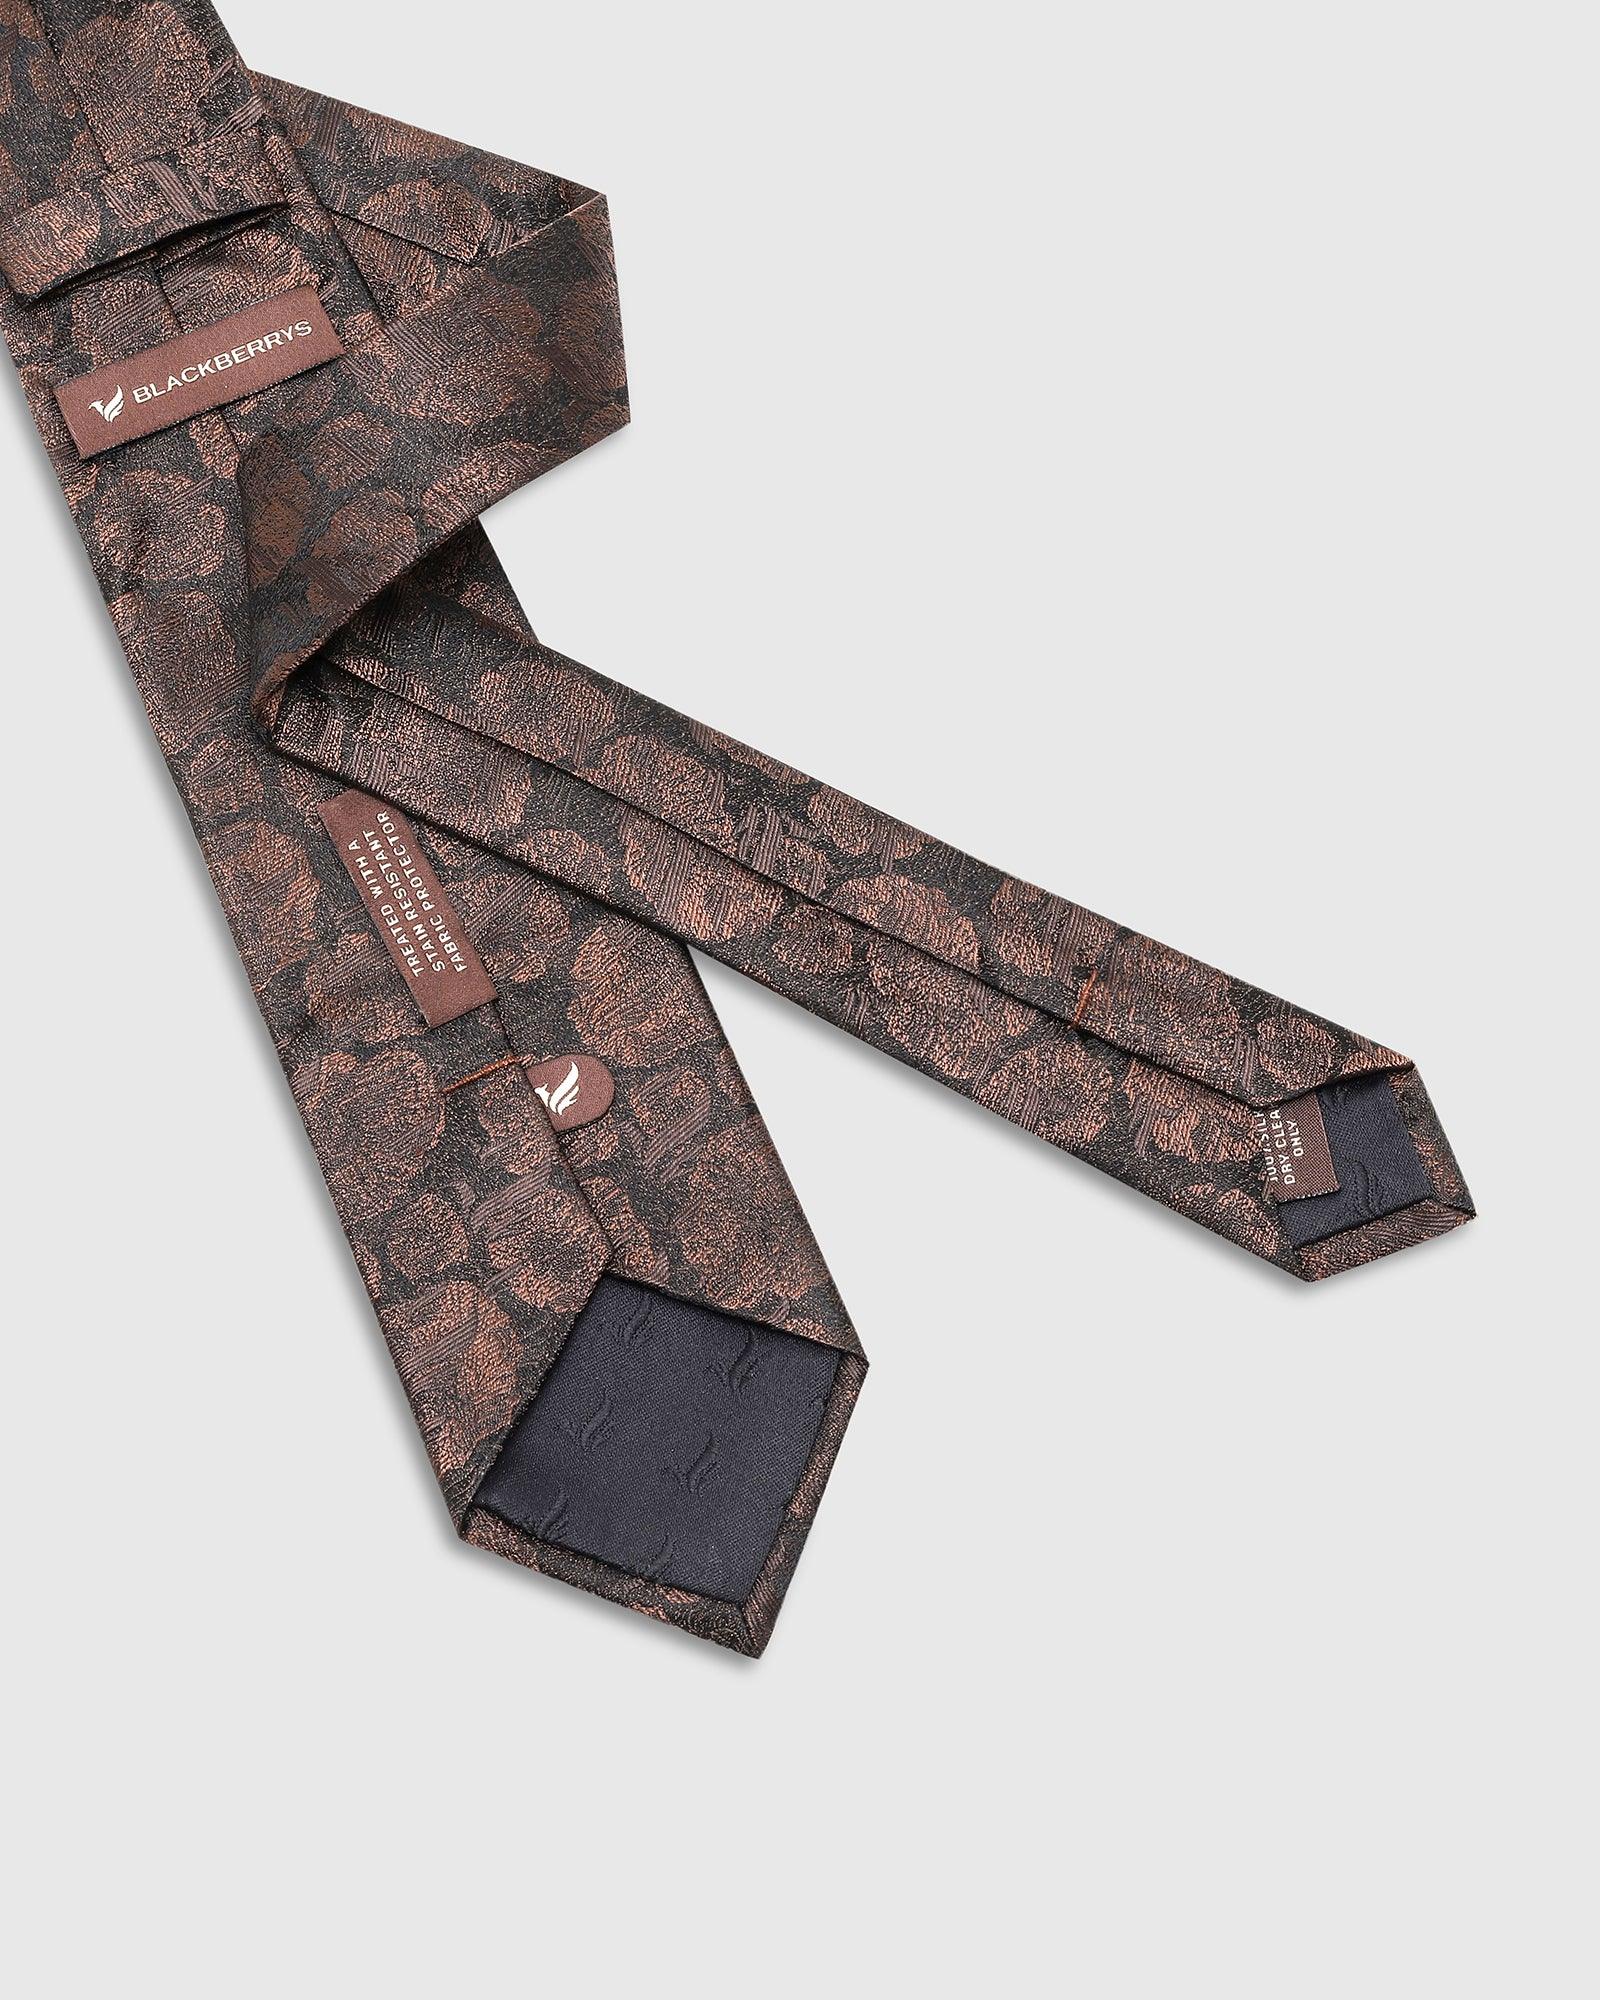 Printed Tie In Brown (Talisca) - Blackberrys